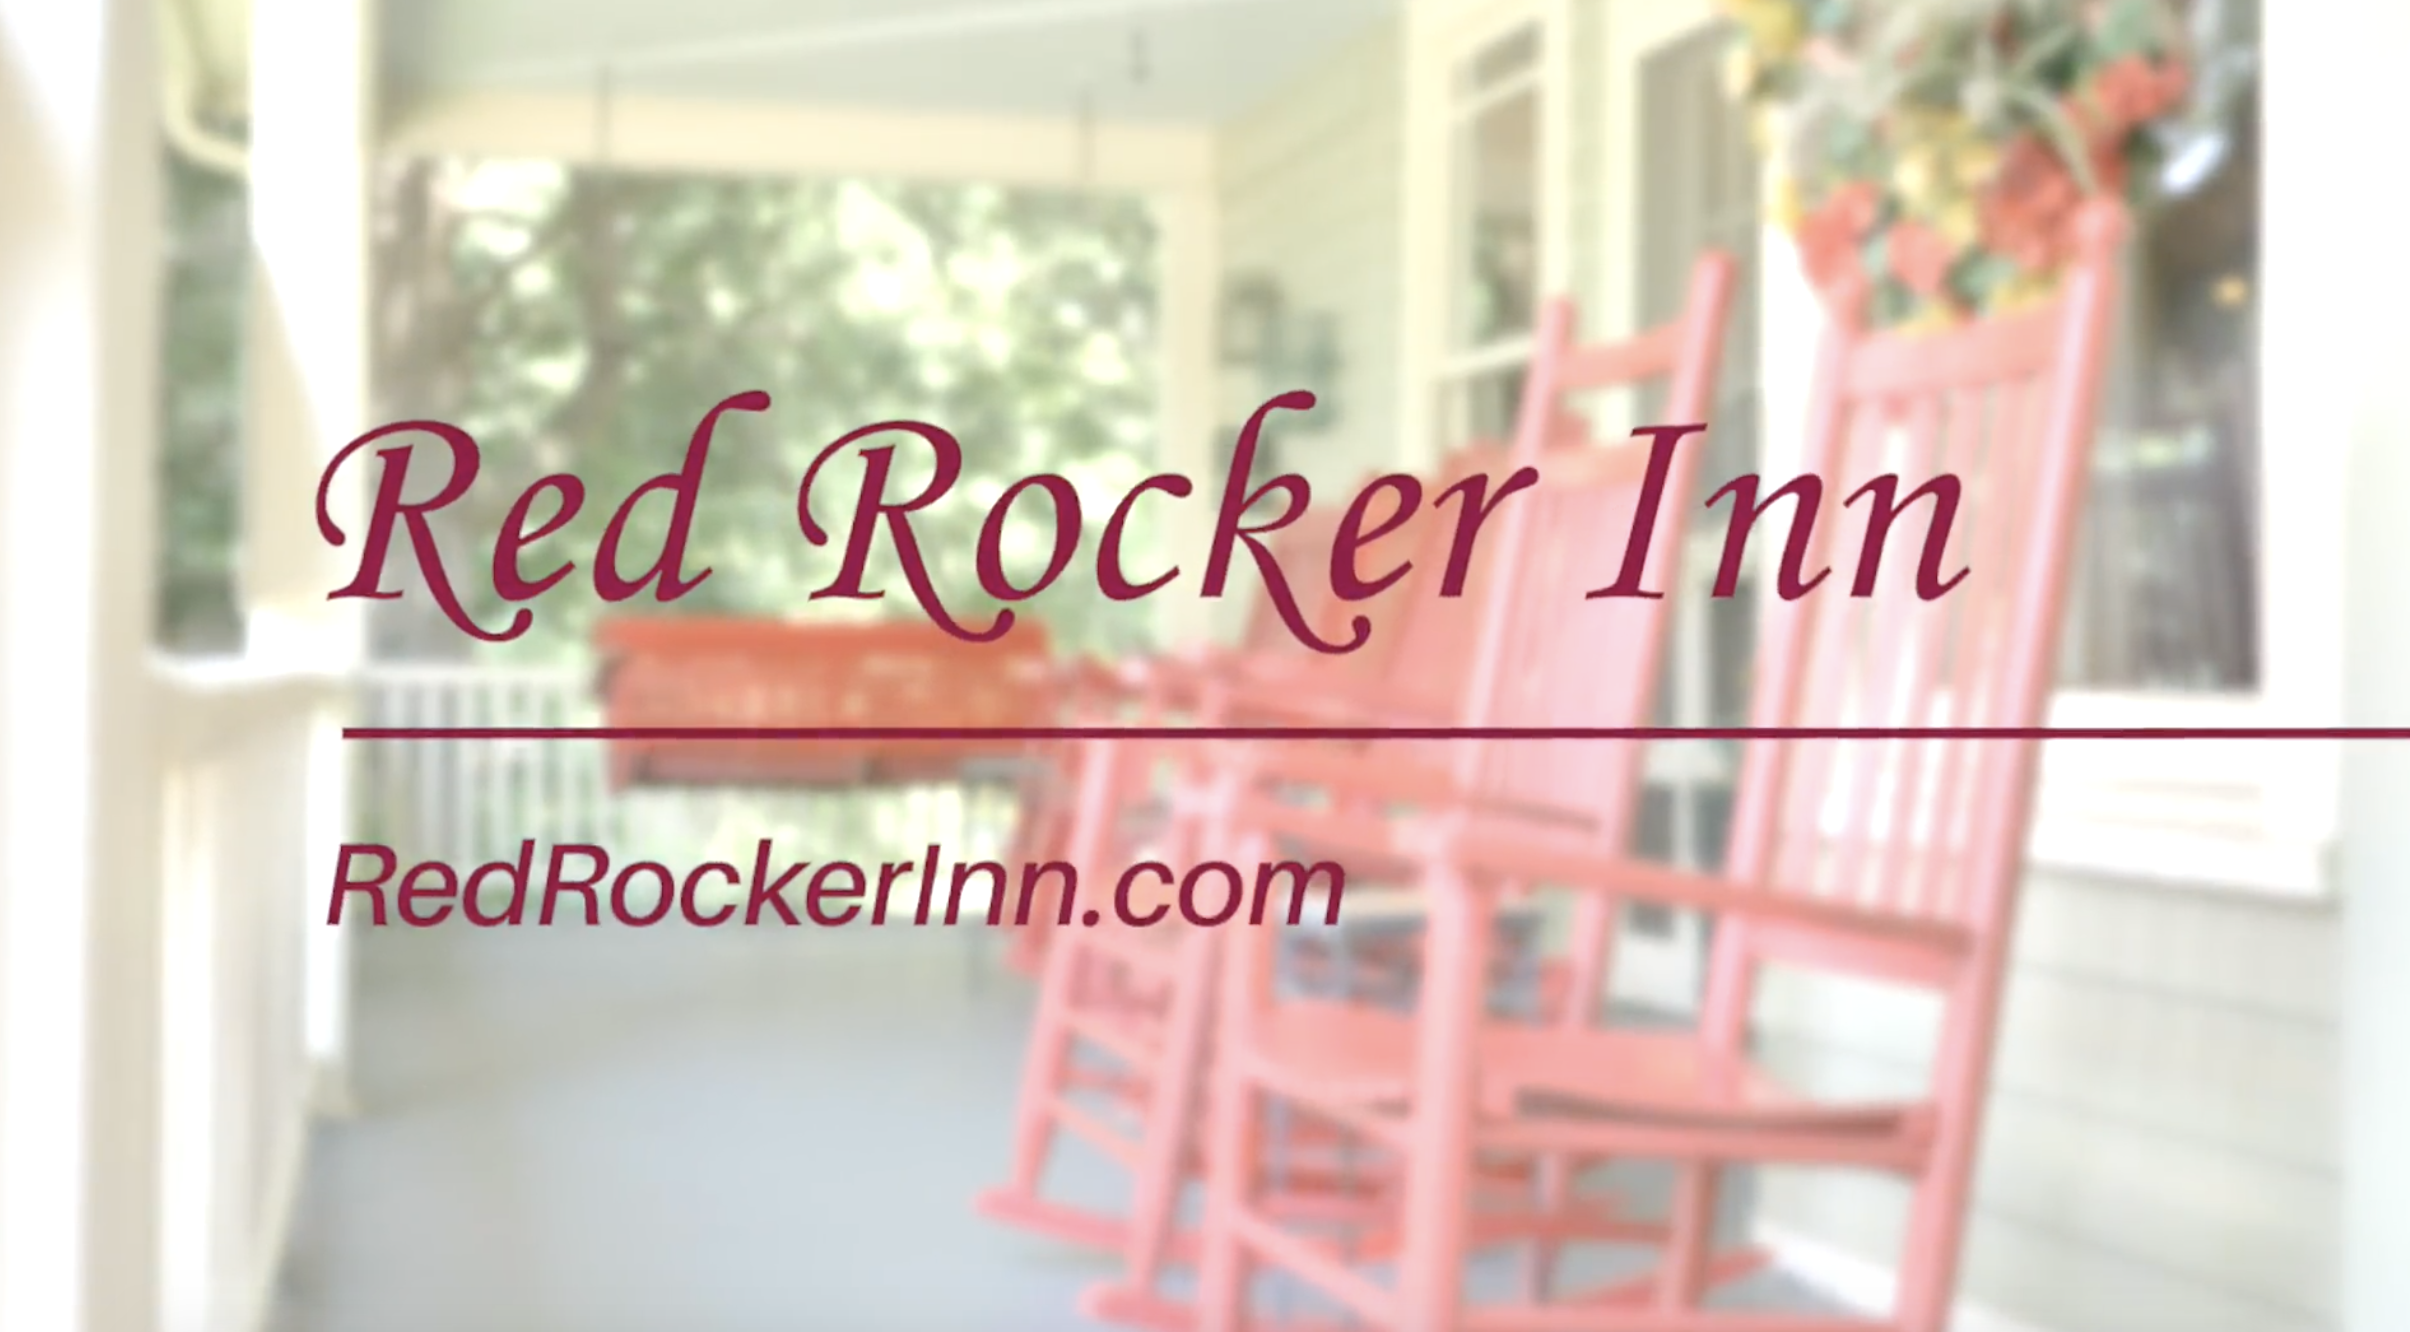 Red Rocker Inn